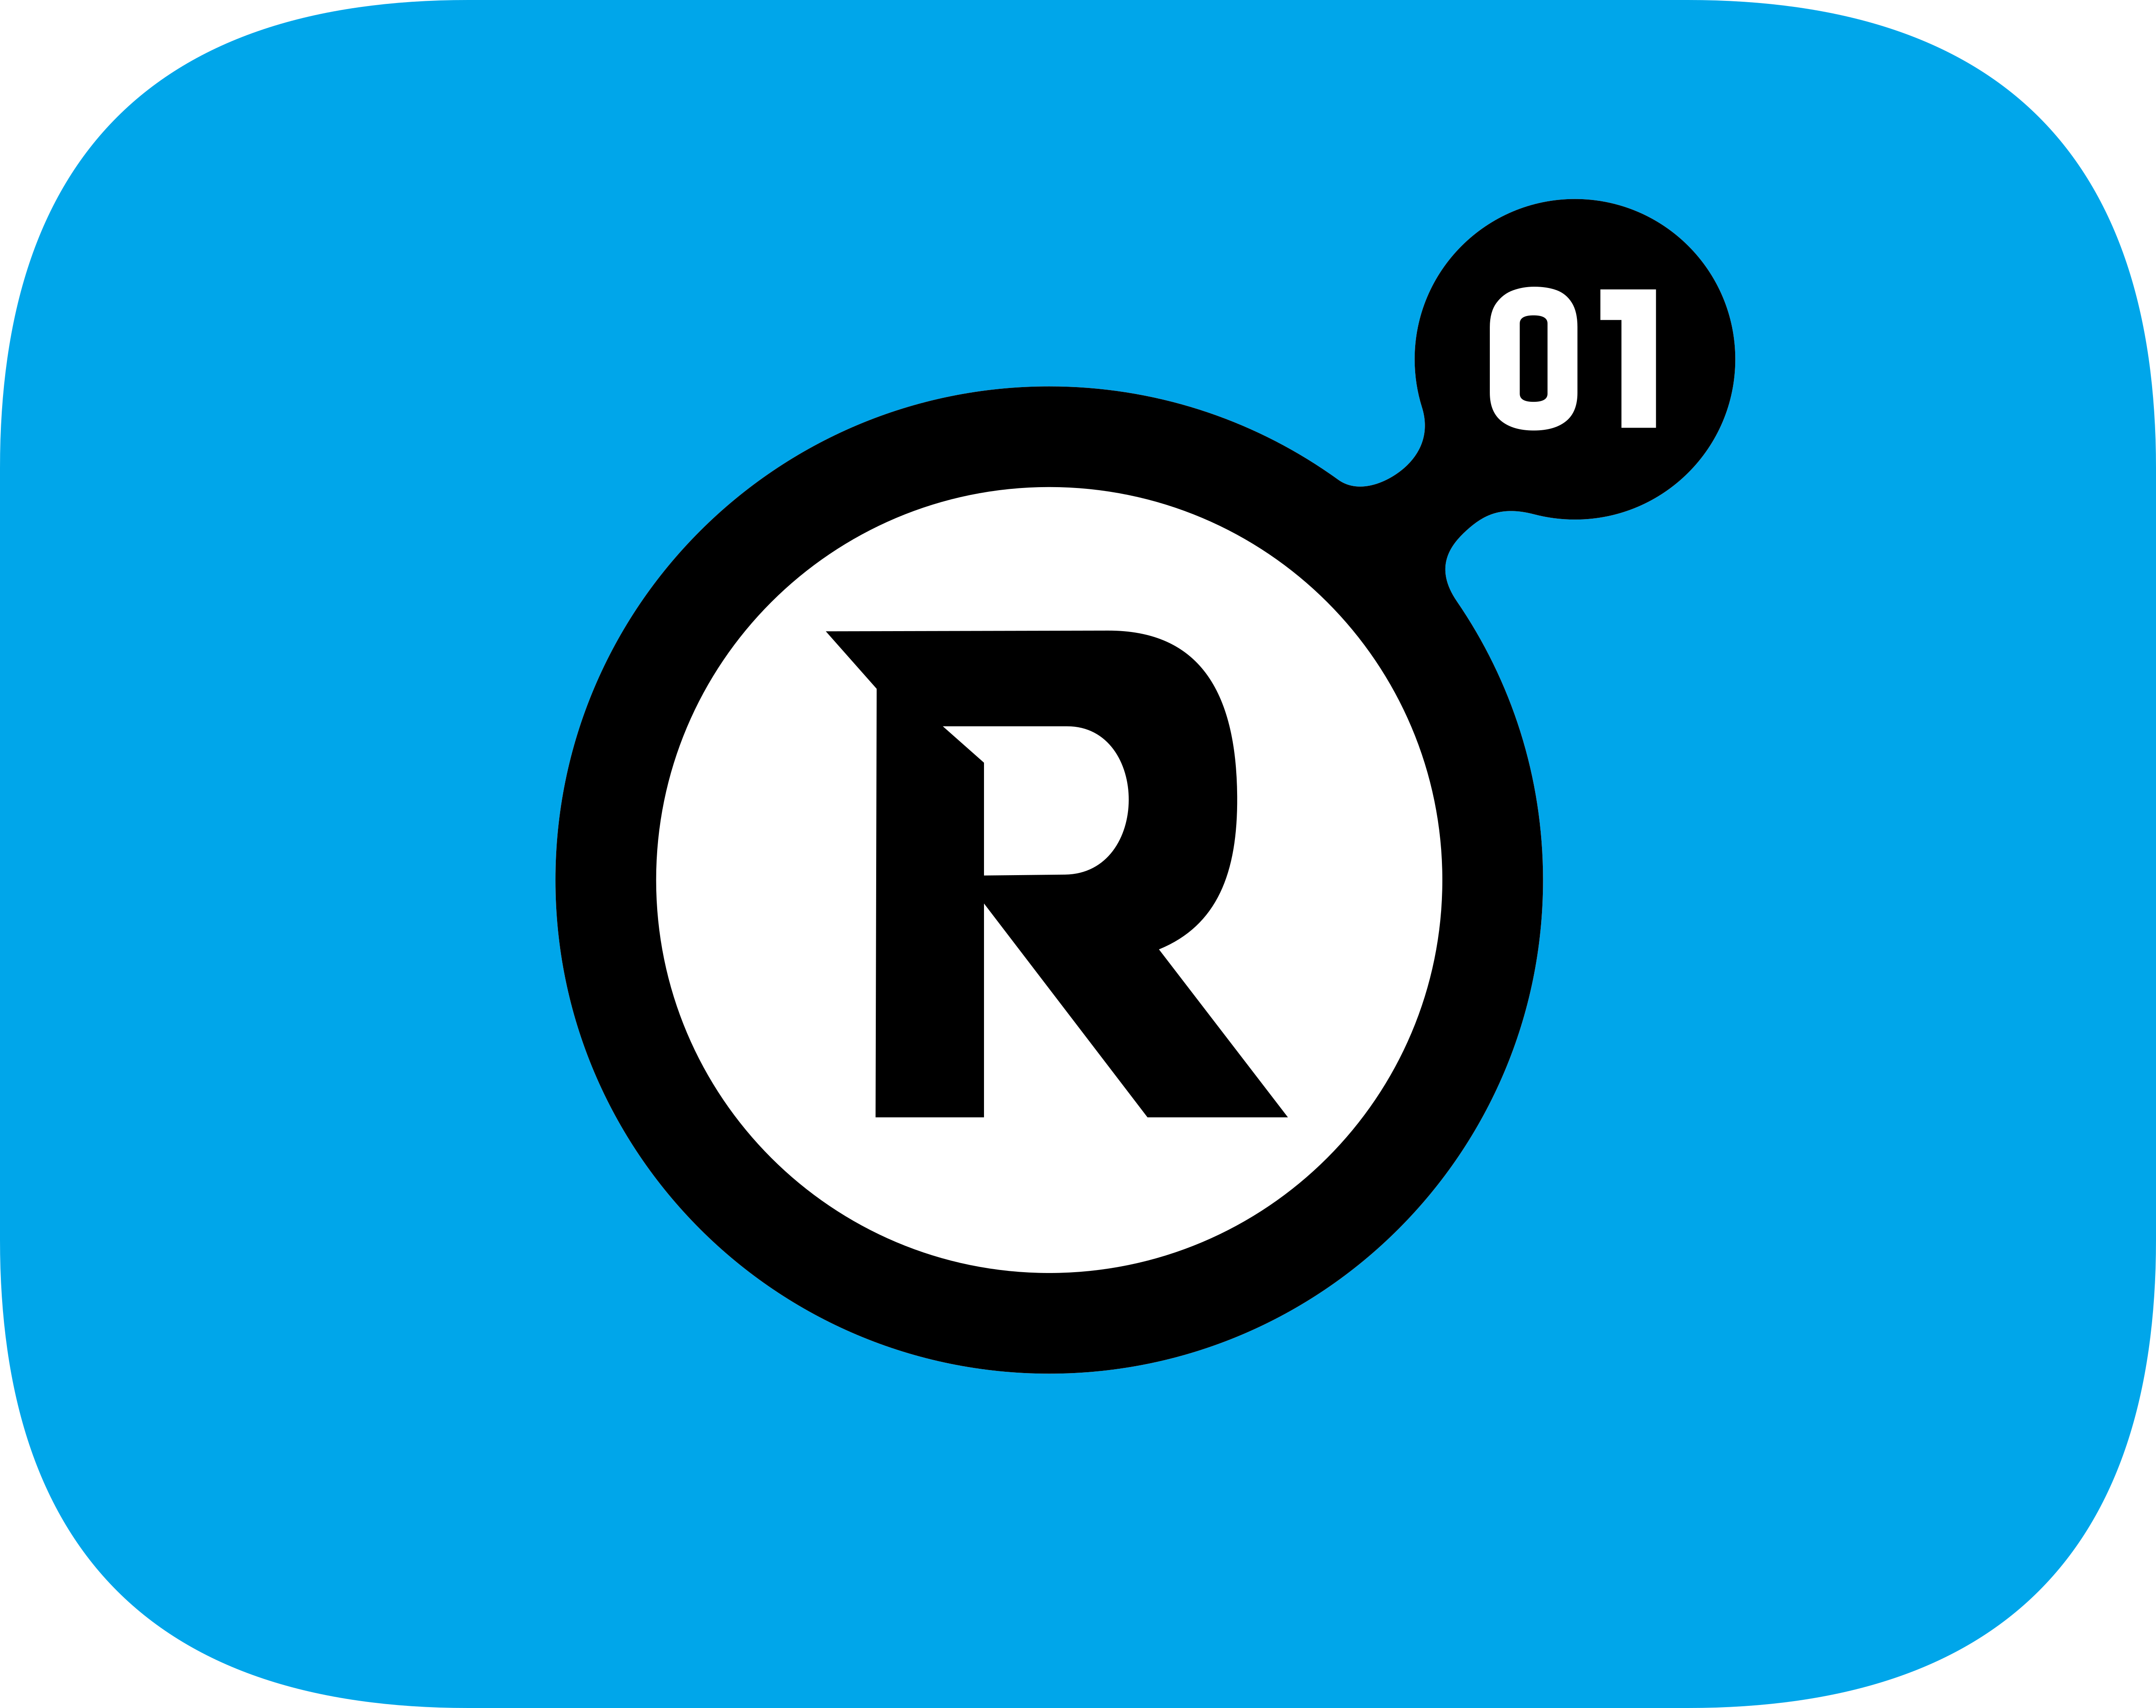 Регистратор 01. R01 регистратор доменов. R01 лого. R01. R01.ru.